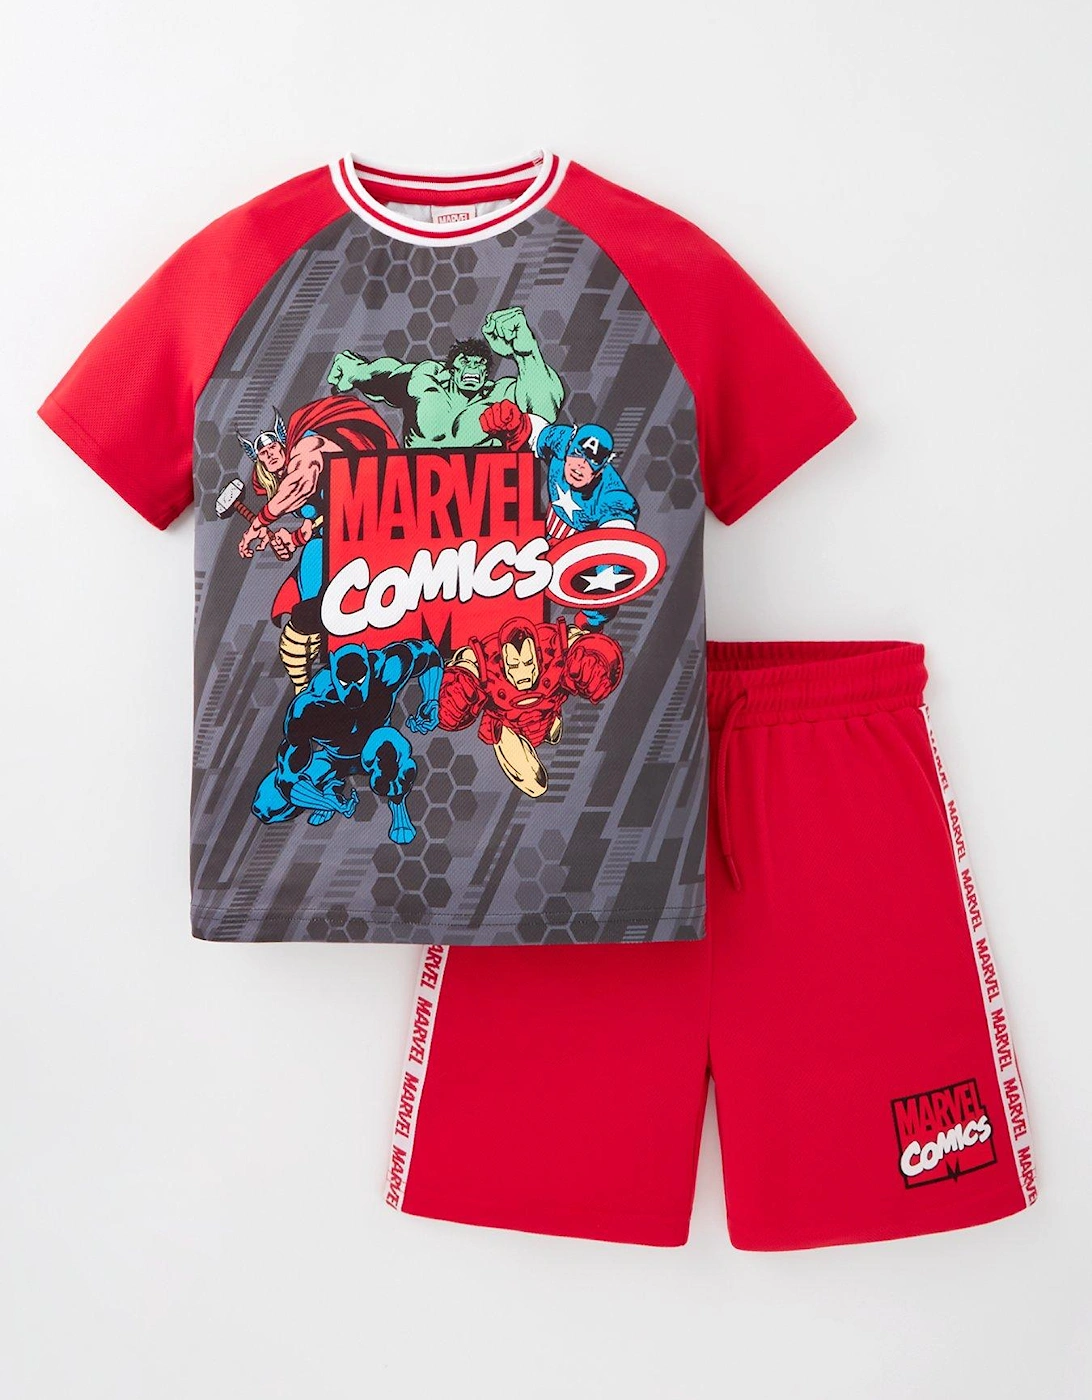 Avengers 2 Piece Football T-shirt And Short Set, 2 of 1